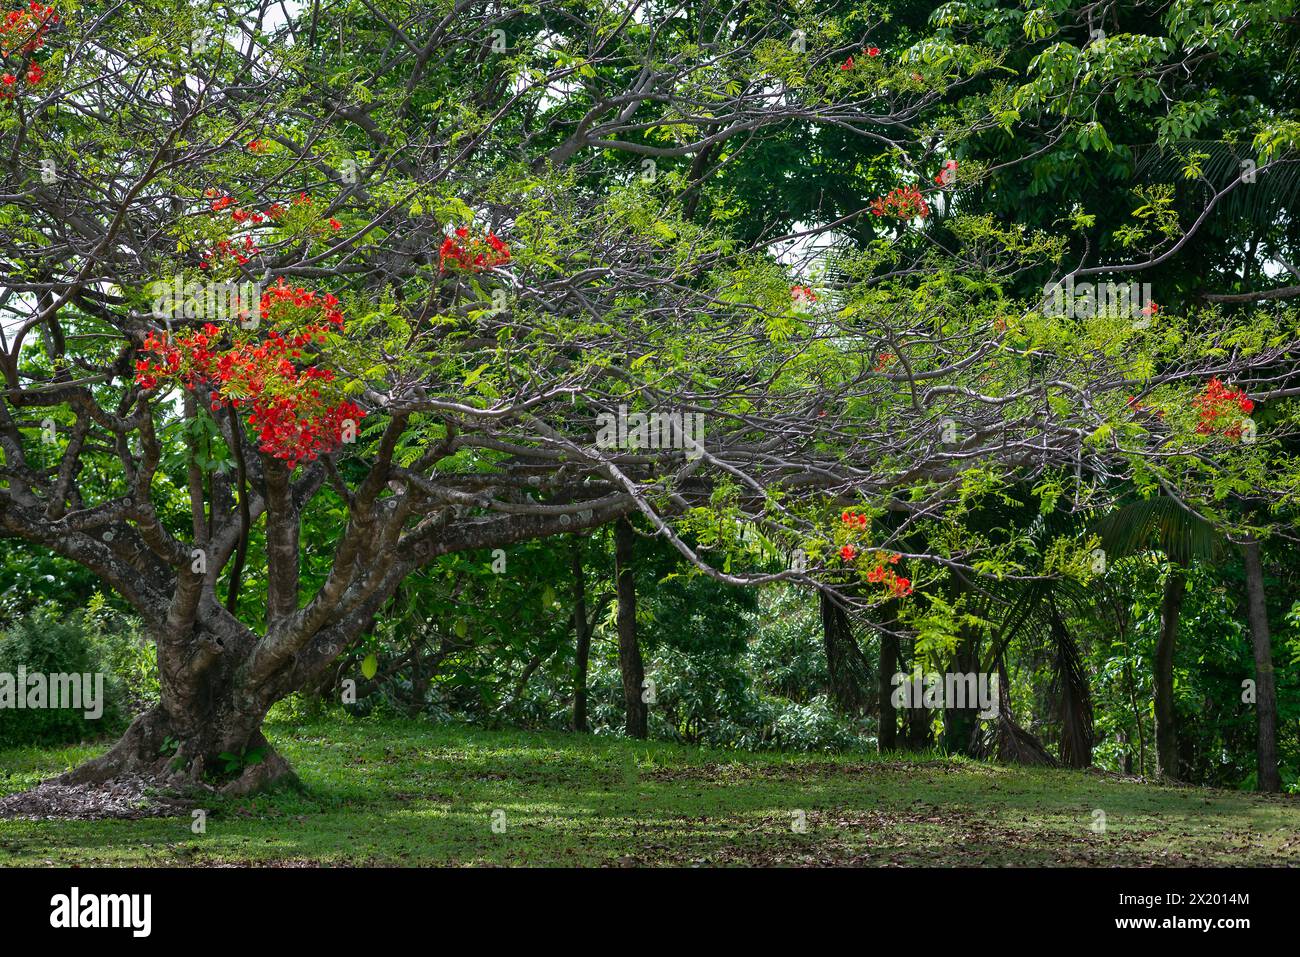 Königliche poinciana Baum im tropischen Garten rote Blüten blühen exotisch schöne Trinidad und Tobago Stockfoto